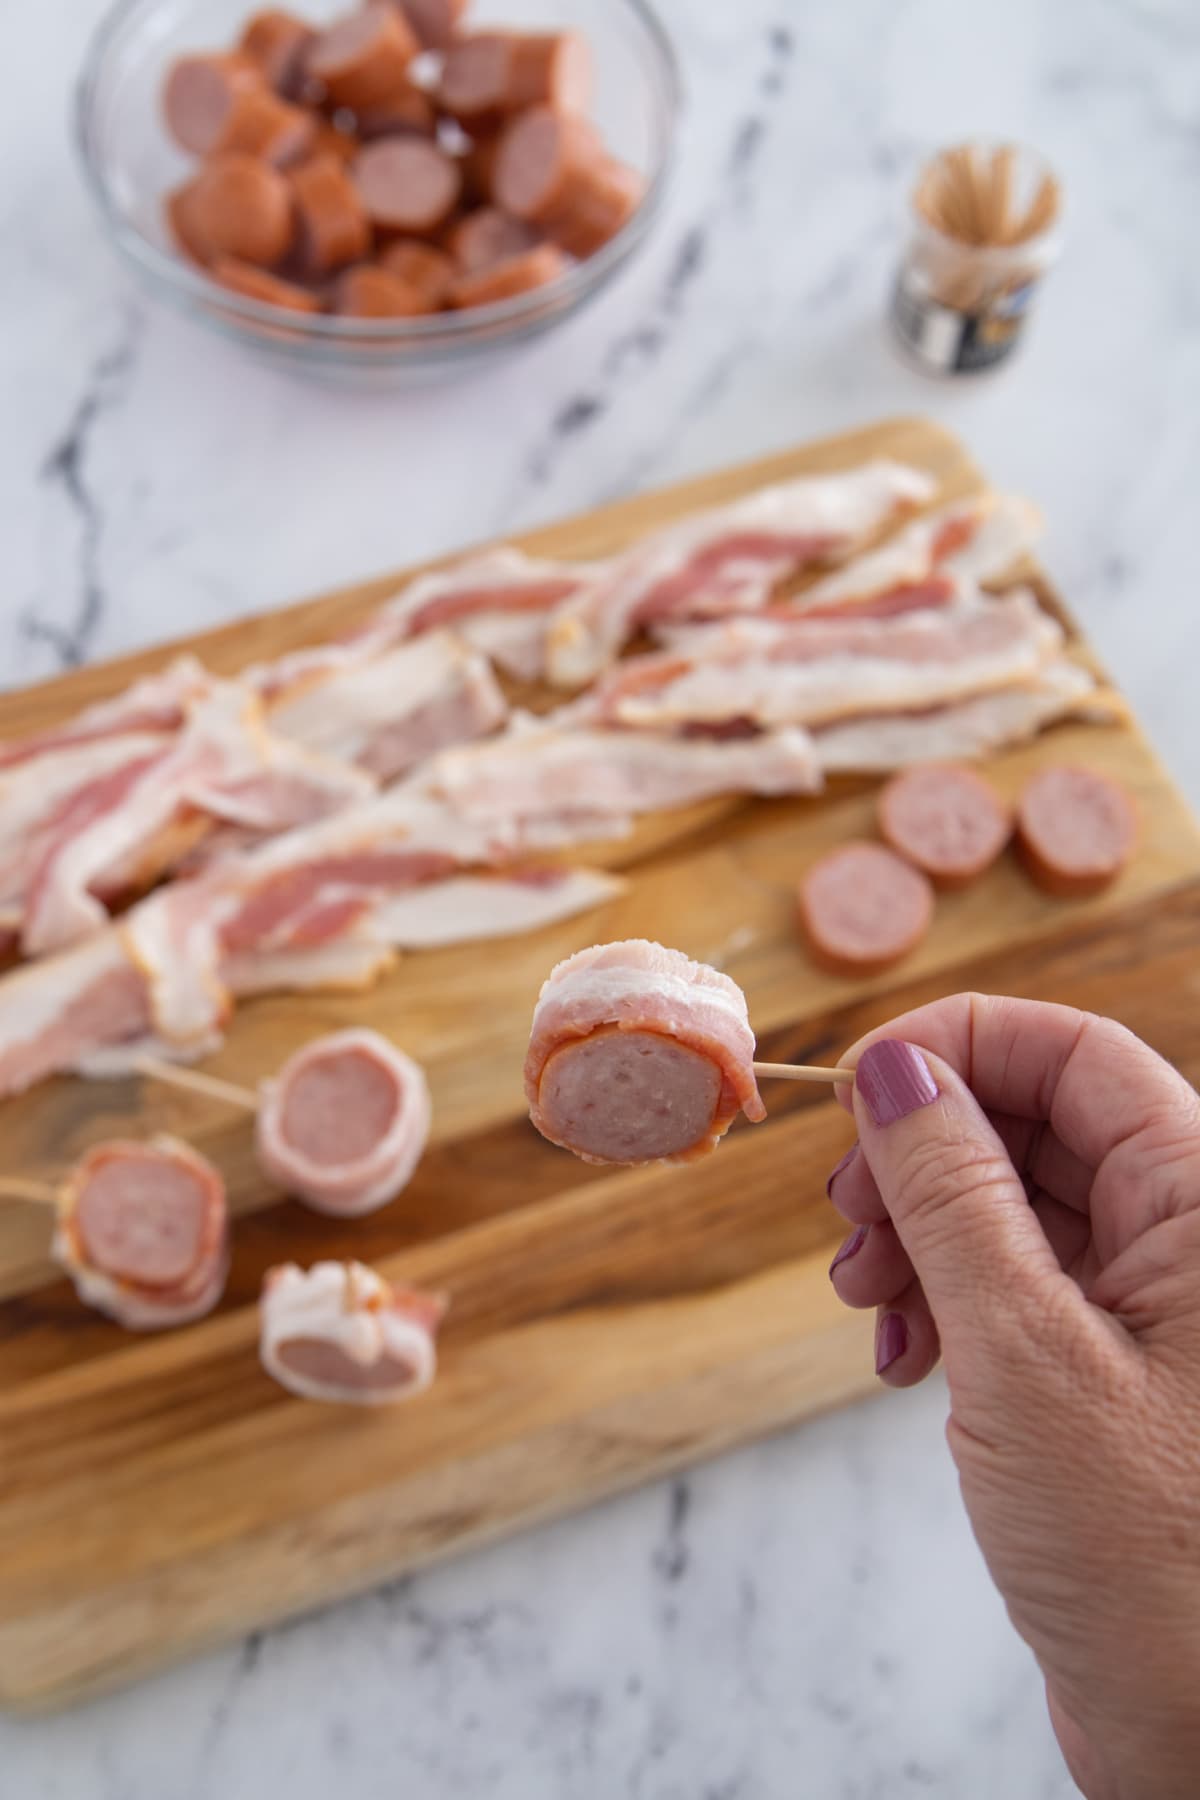 Bacon wrapped around sausage slice